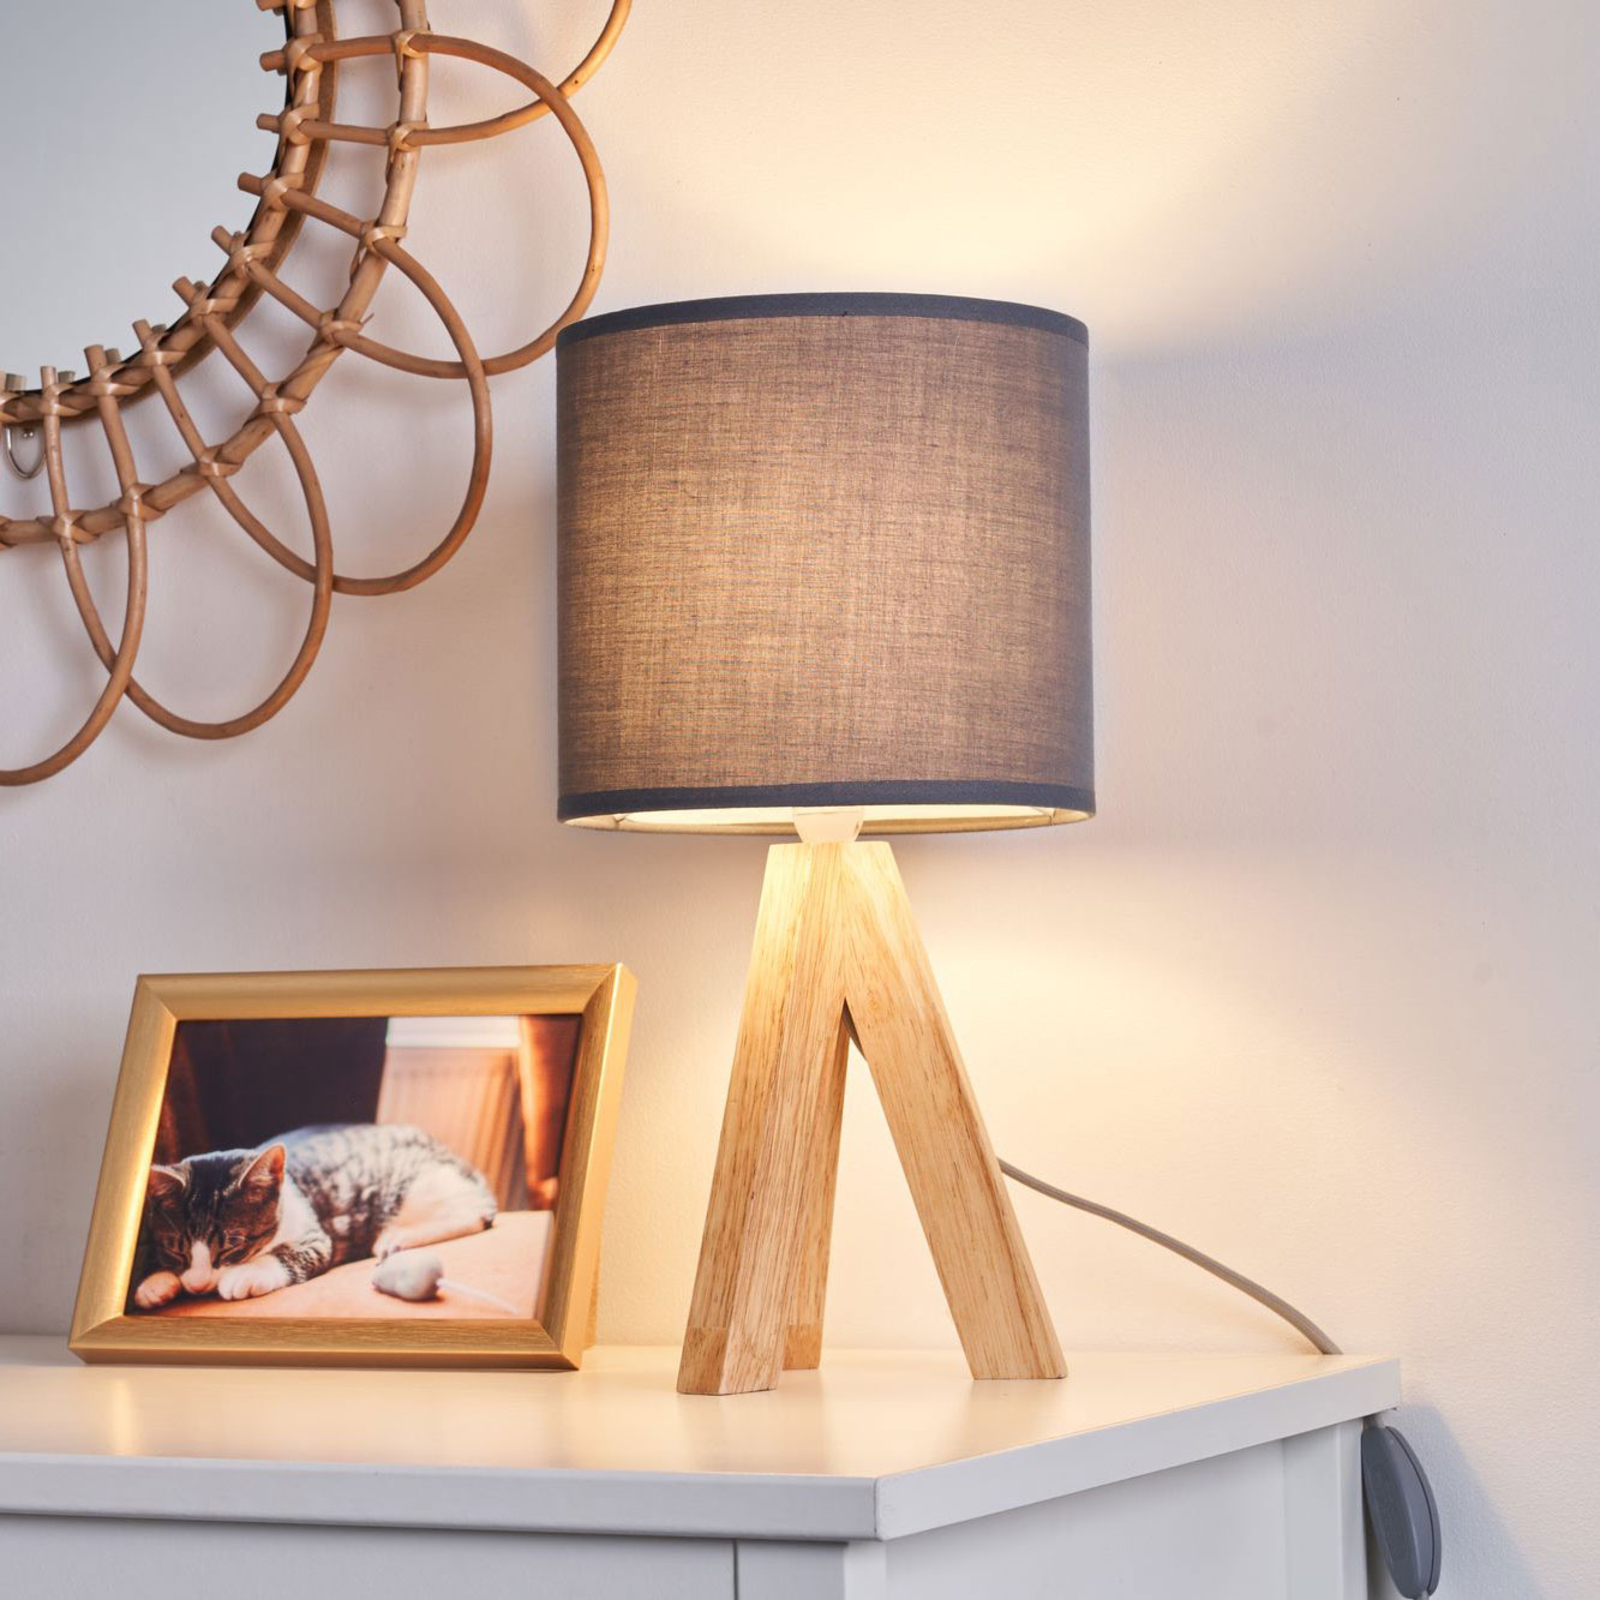 Pauleen Woody Love настолна лампа с дървена рамка